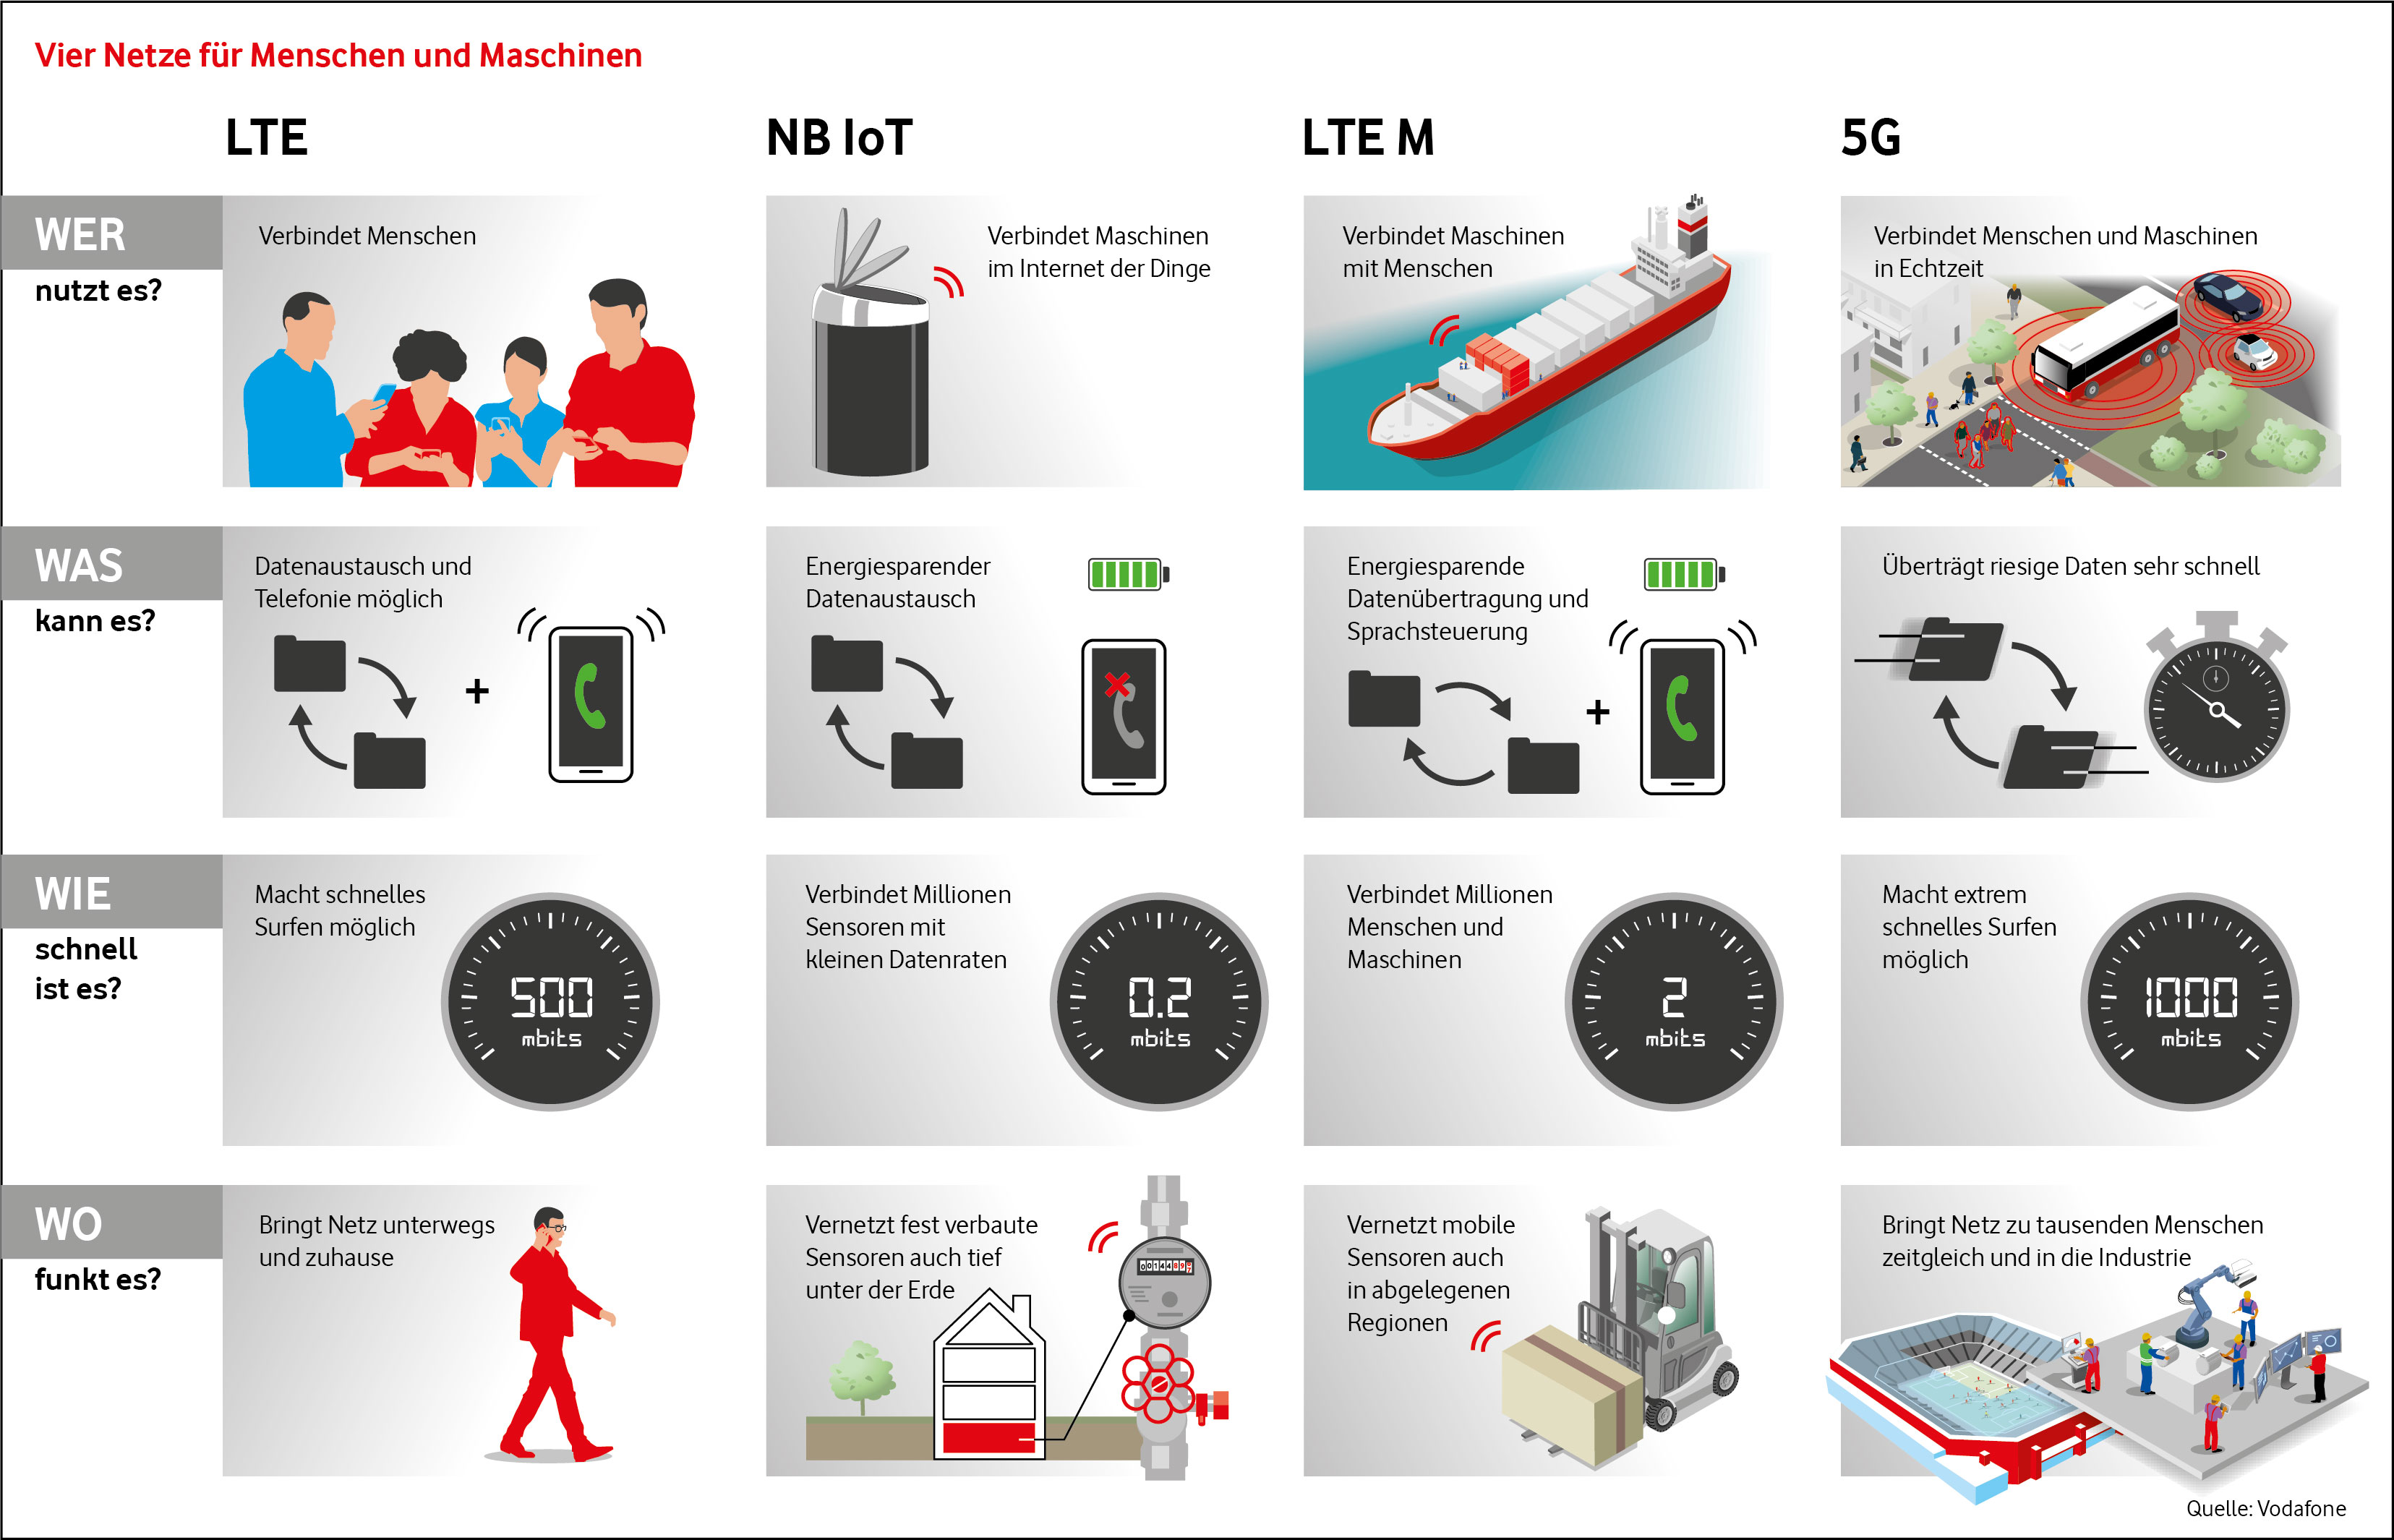 Vodafone LTE M Netzausbau: Vodafone aktiviert bundesweit LTE M fr Mensch und Maschine